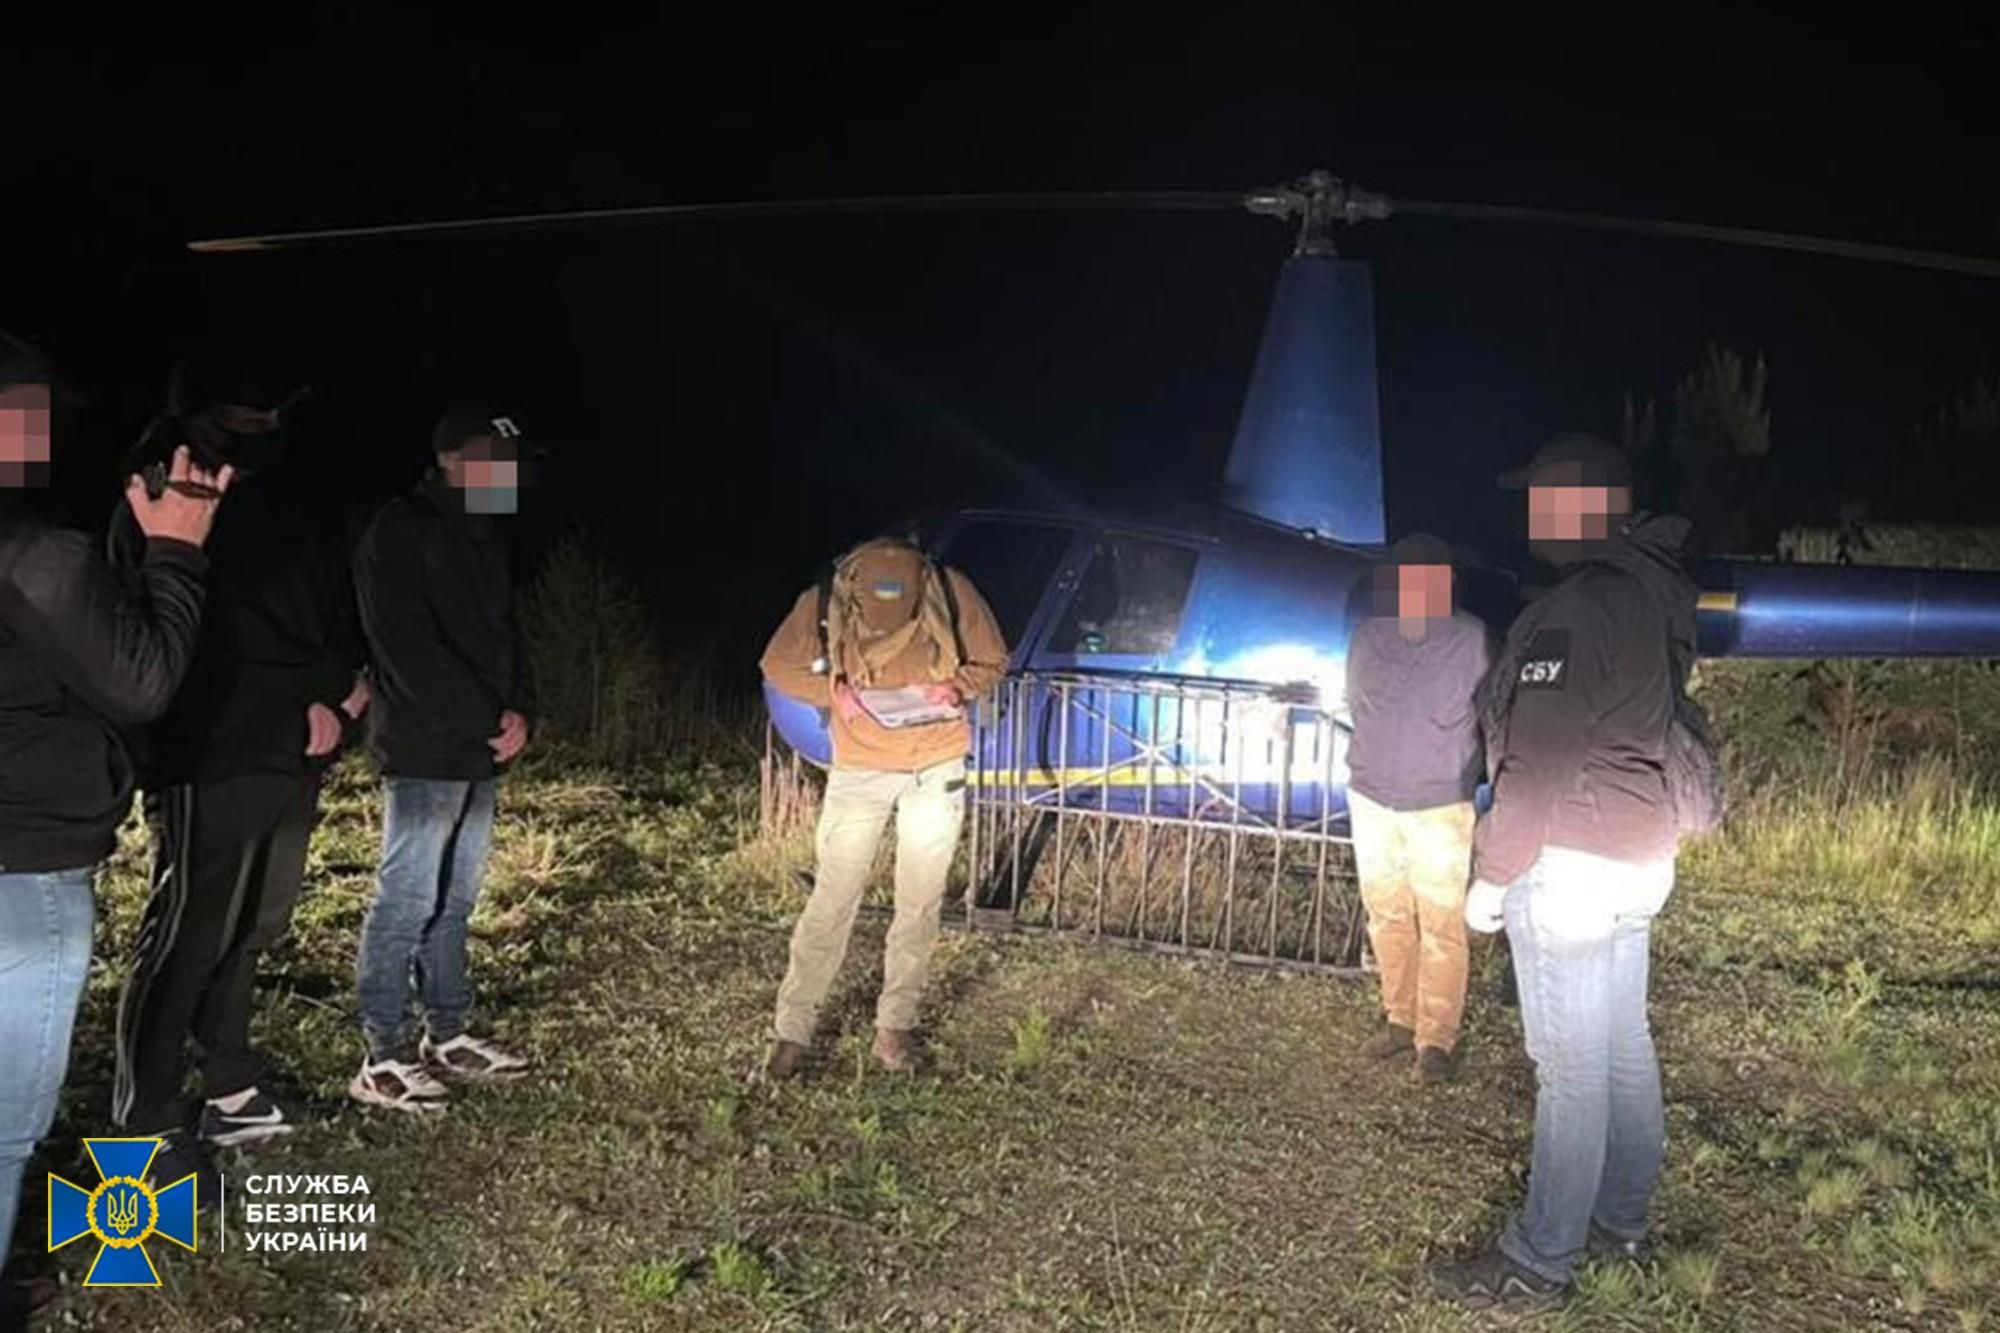 Сигареты переправляли вертолетом: на Волыни СБУ задержала группу контрабандистов